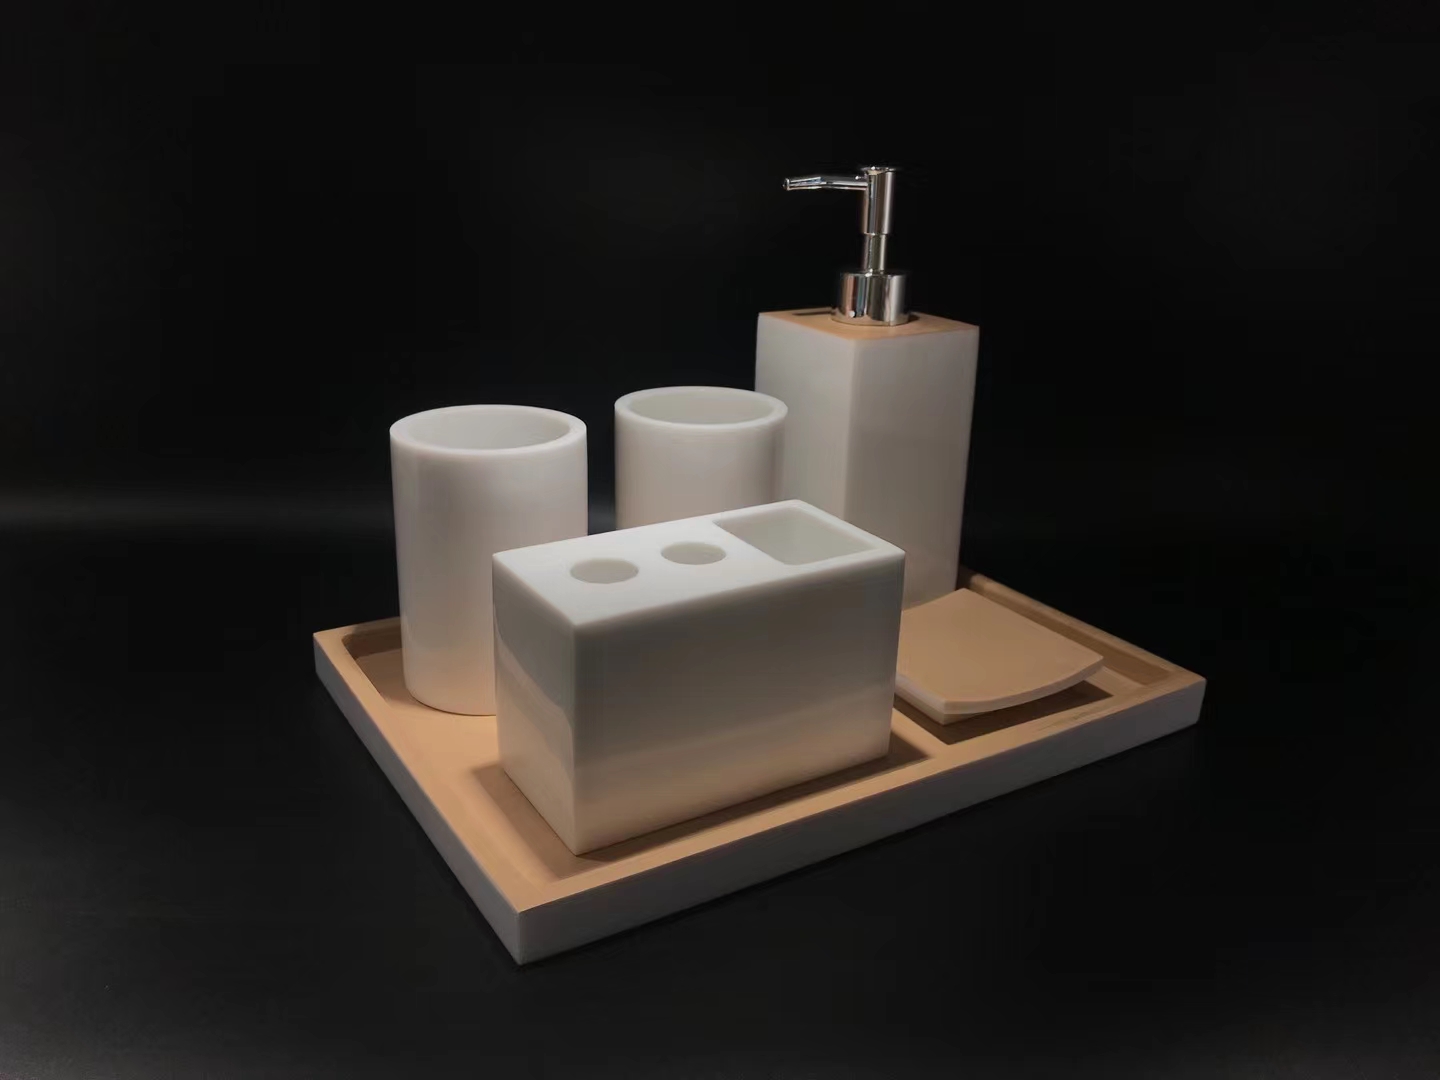 Bộ đồ chất liệu nhựa Resin trong phòng tắm & phòng ngủ